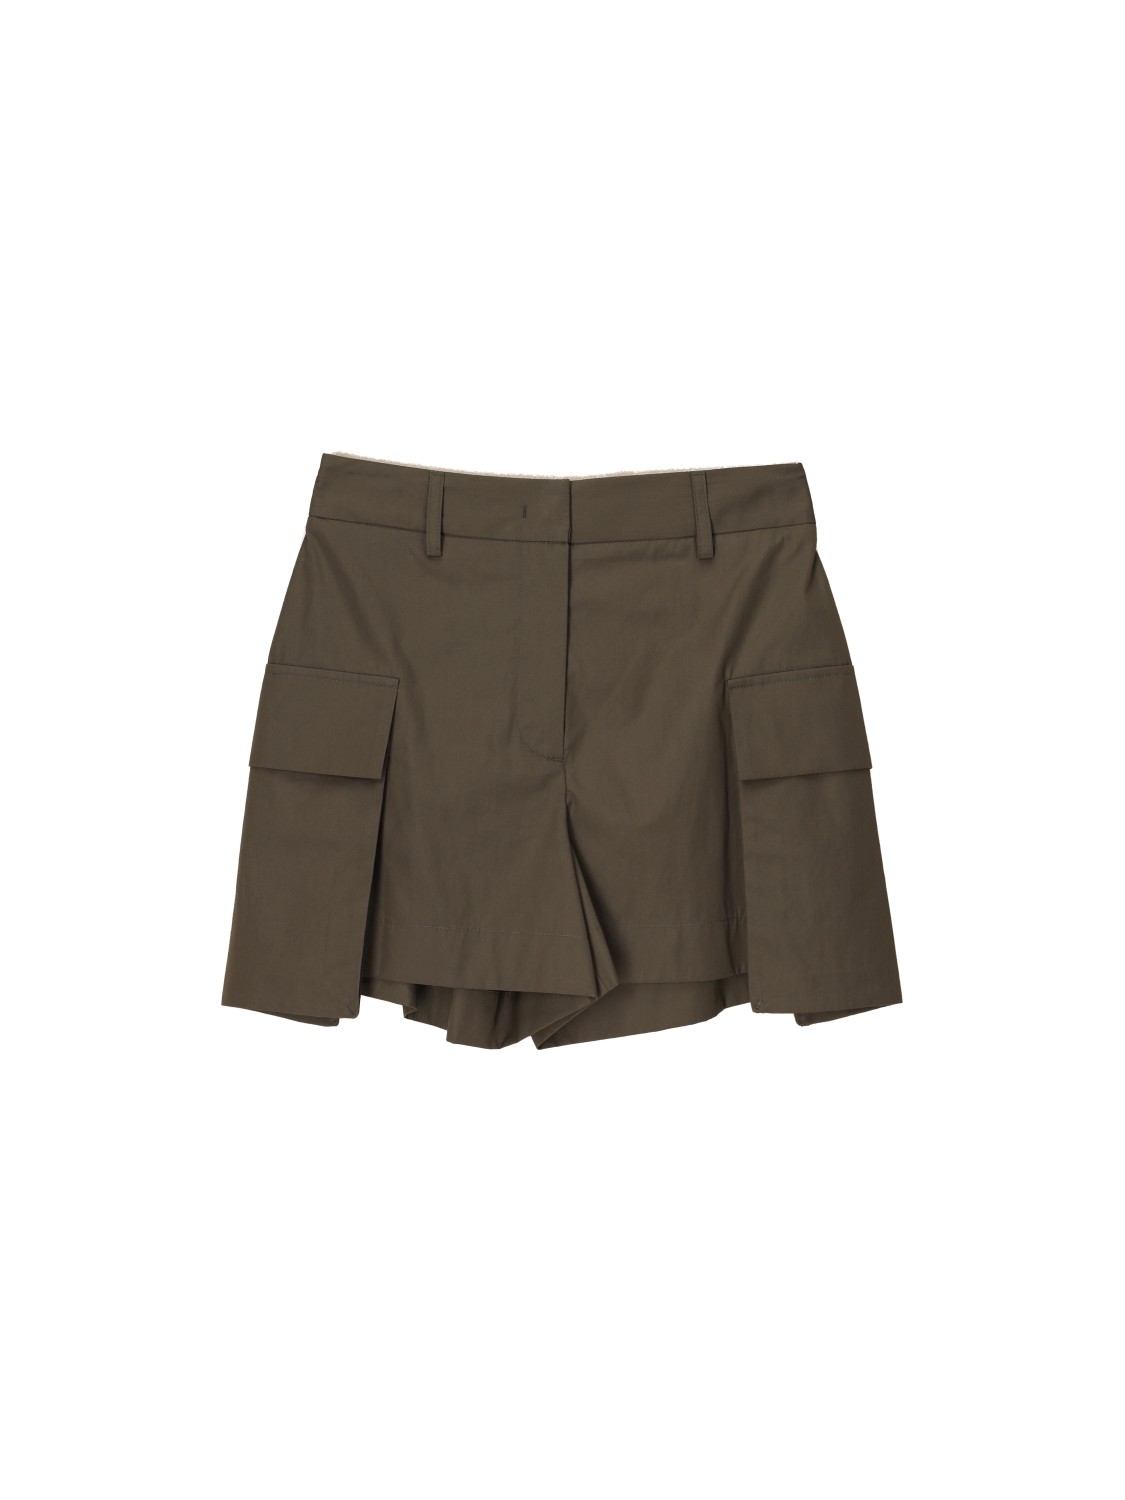 Lorena Antoniazzi Cotton cargo style shorts  khaki 34